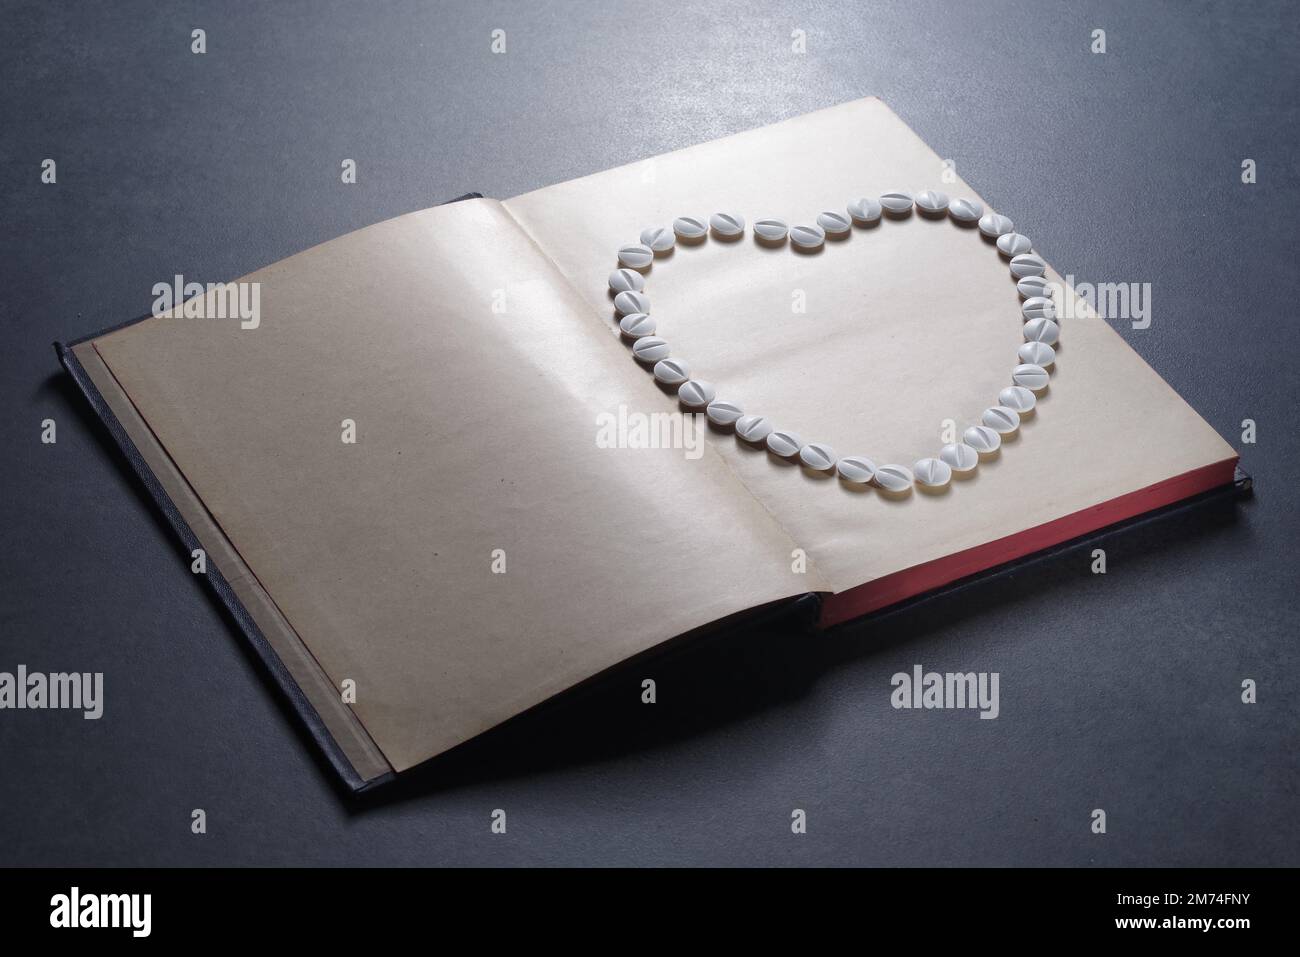 Symbole de coeur disposé à partir de pilules sur un livre. Droit en médecine. Concept de droit médical et de crimes médicaux Banque D'Images